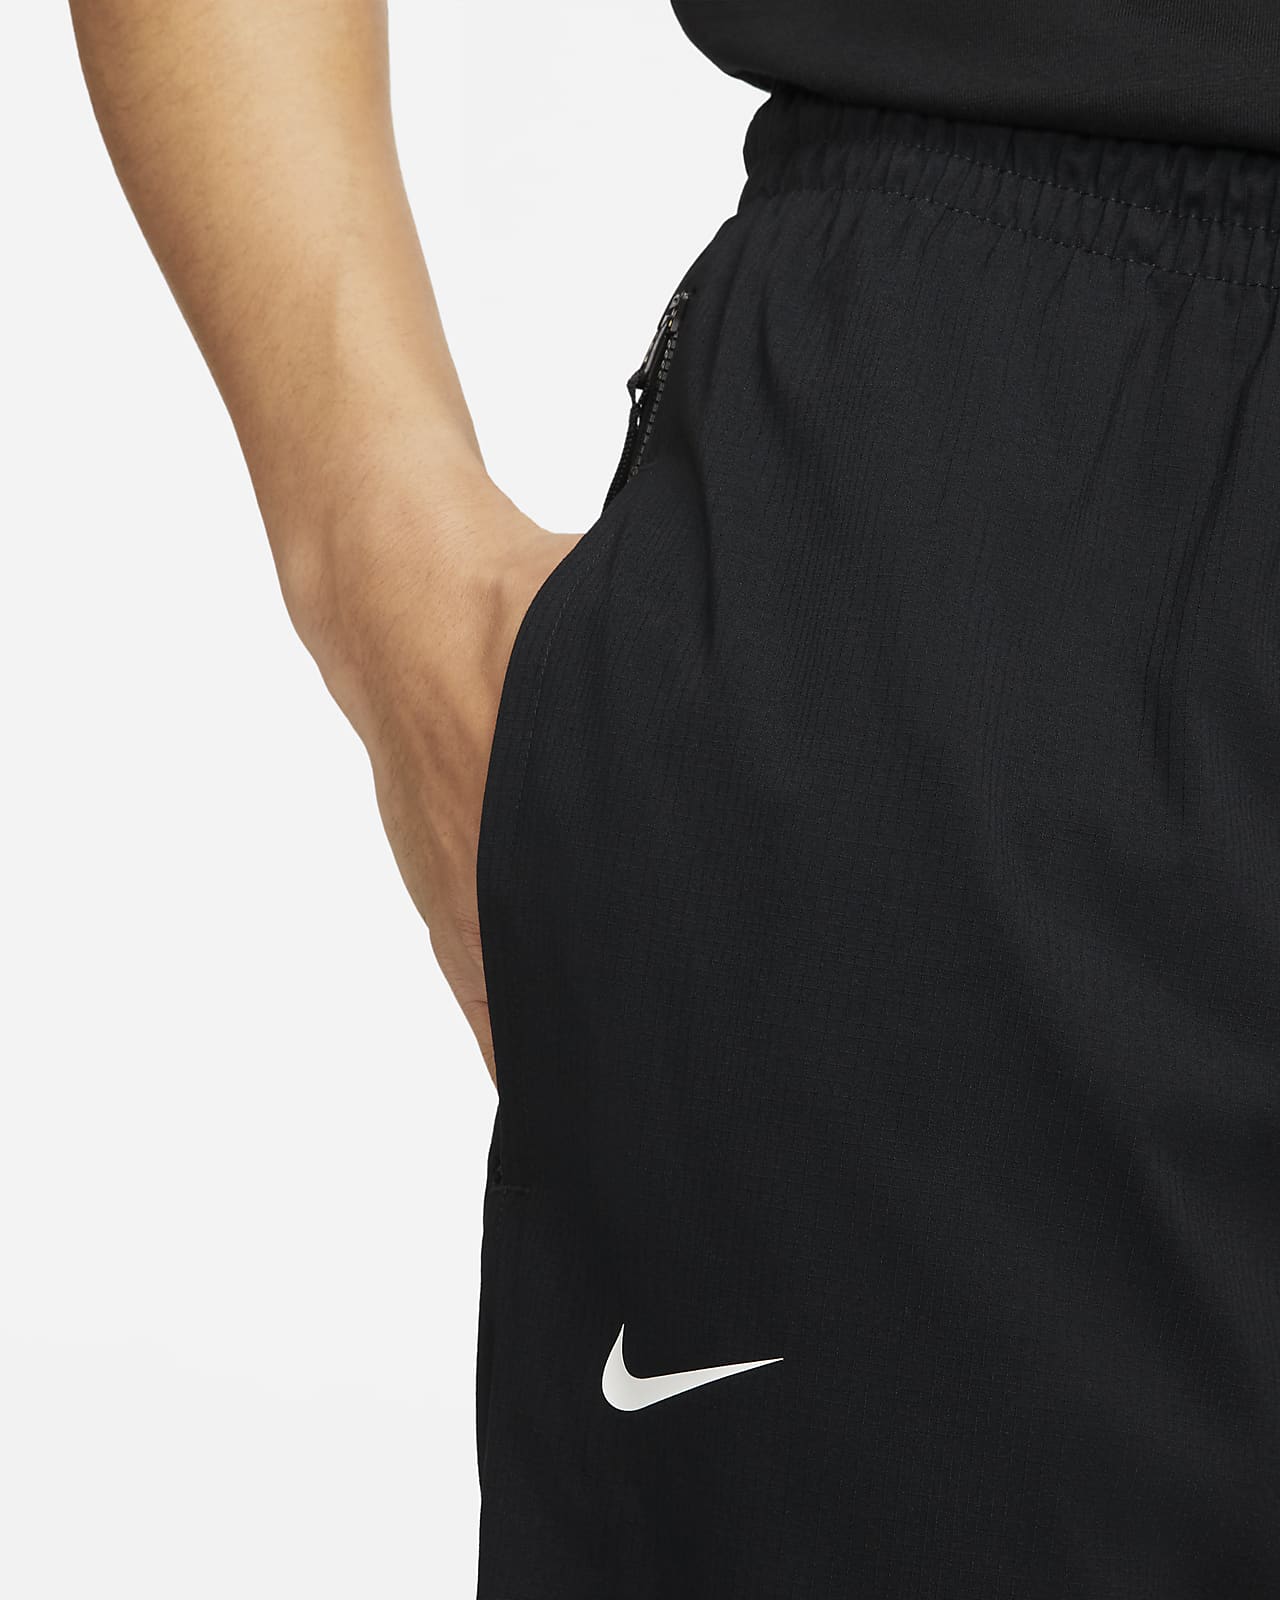 Nike Men's Woven Basketball Jacket